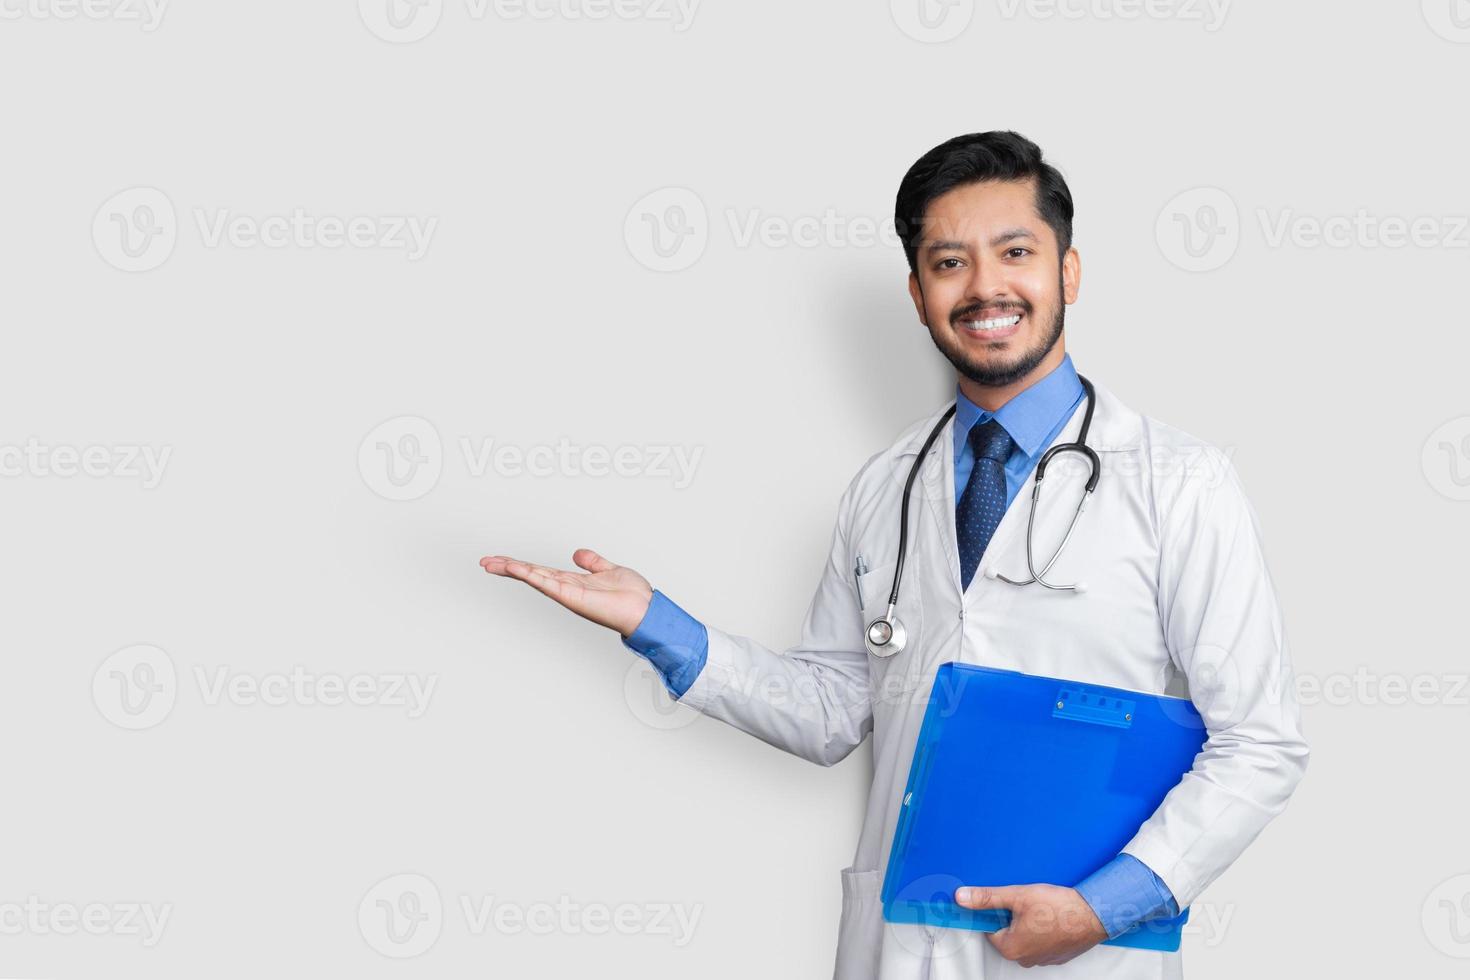 arts die uniform glimlacht terwijl hij presenteert met een patiëntendossier in de hand geïsoleerd op een witte achtergrond met kopieerruimte foto